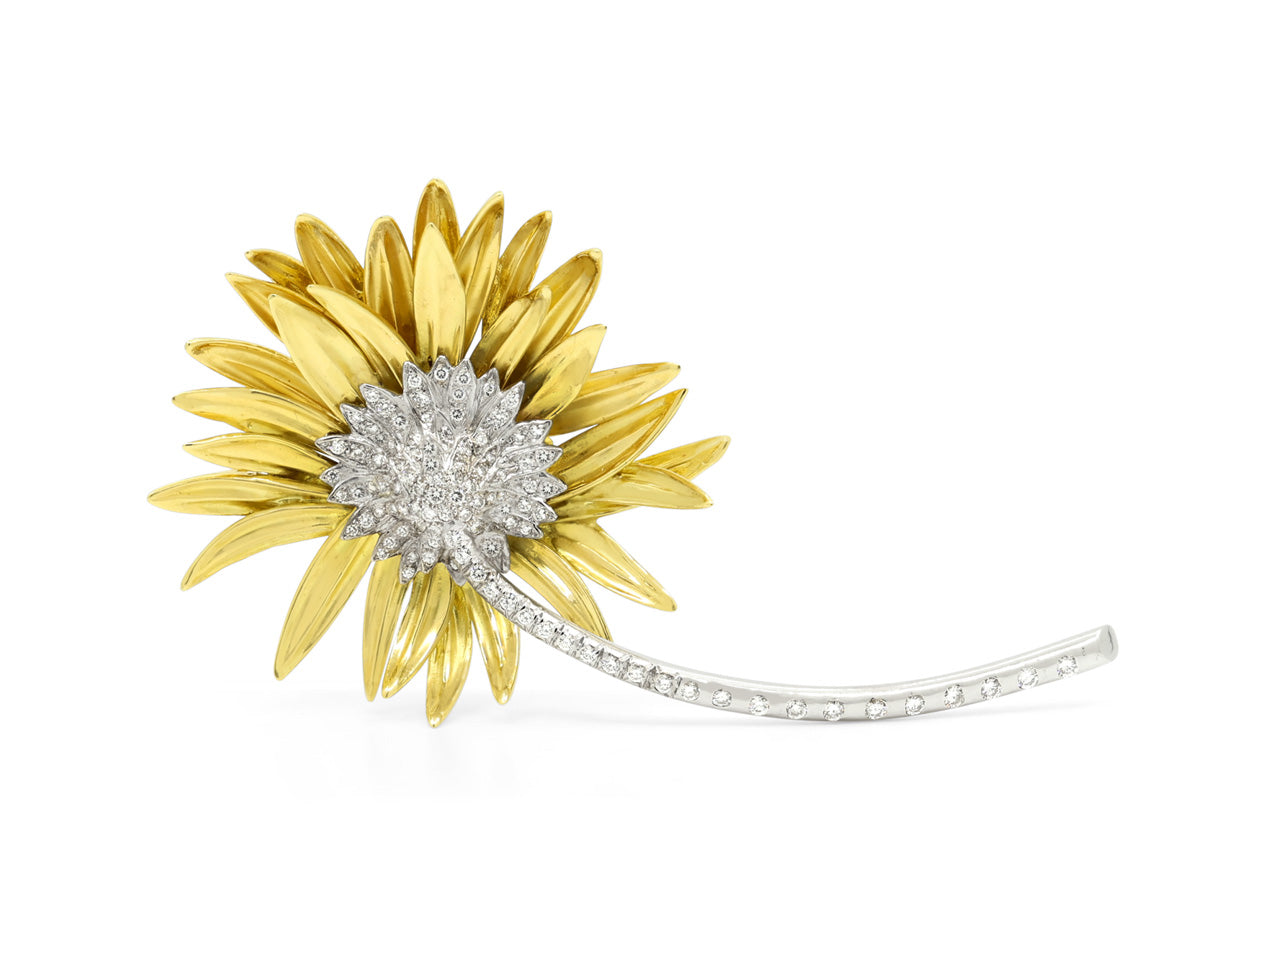 Marlene Stowe Diamond Flower Brooch in 18K Gold